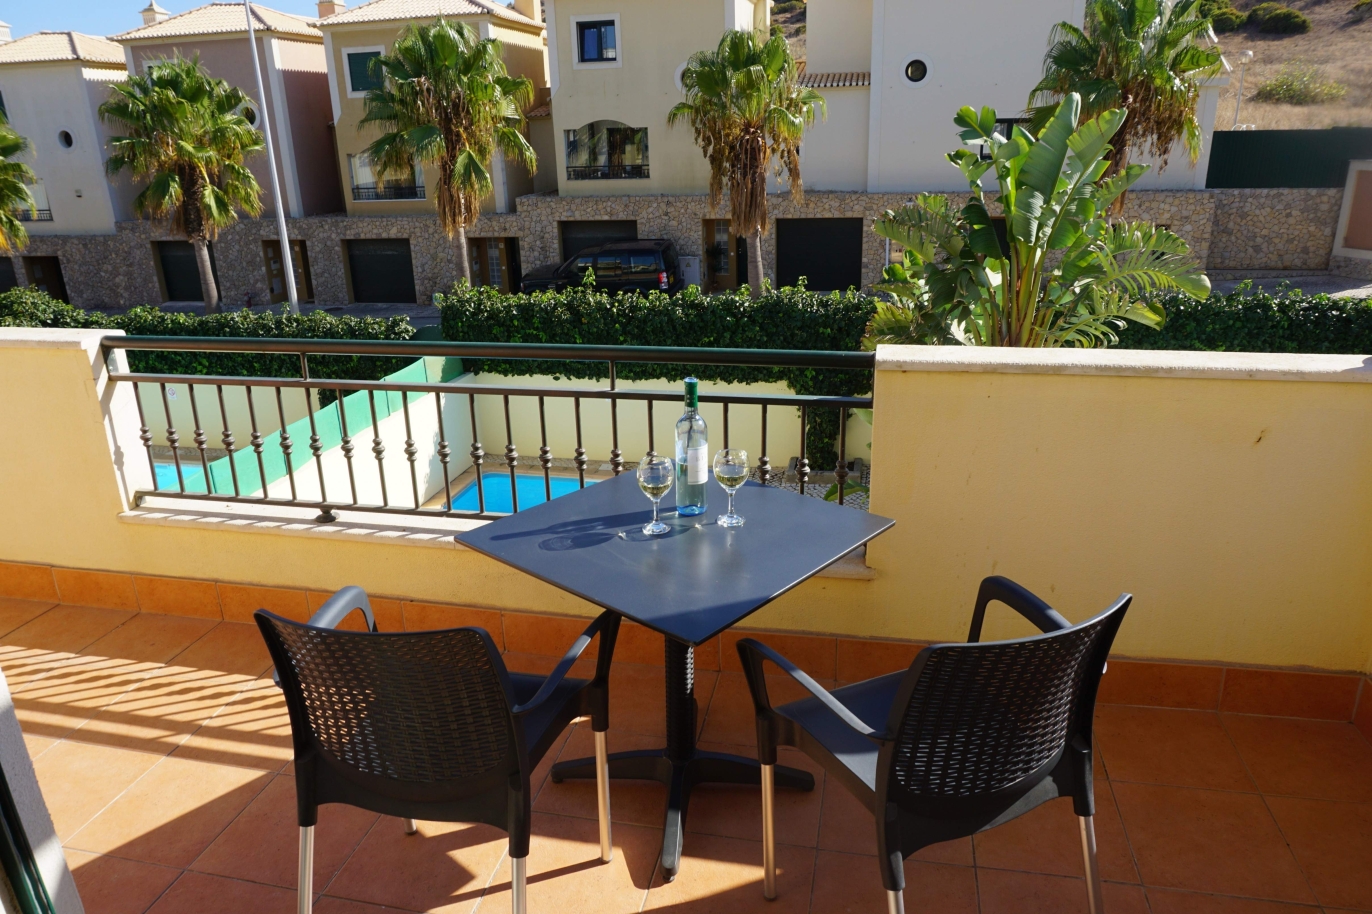 Sale of villa with pool in Budens, Vila do Bispo, Algarve, Portugal_118801